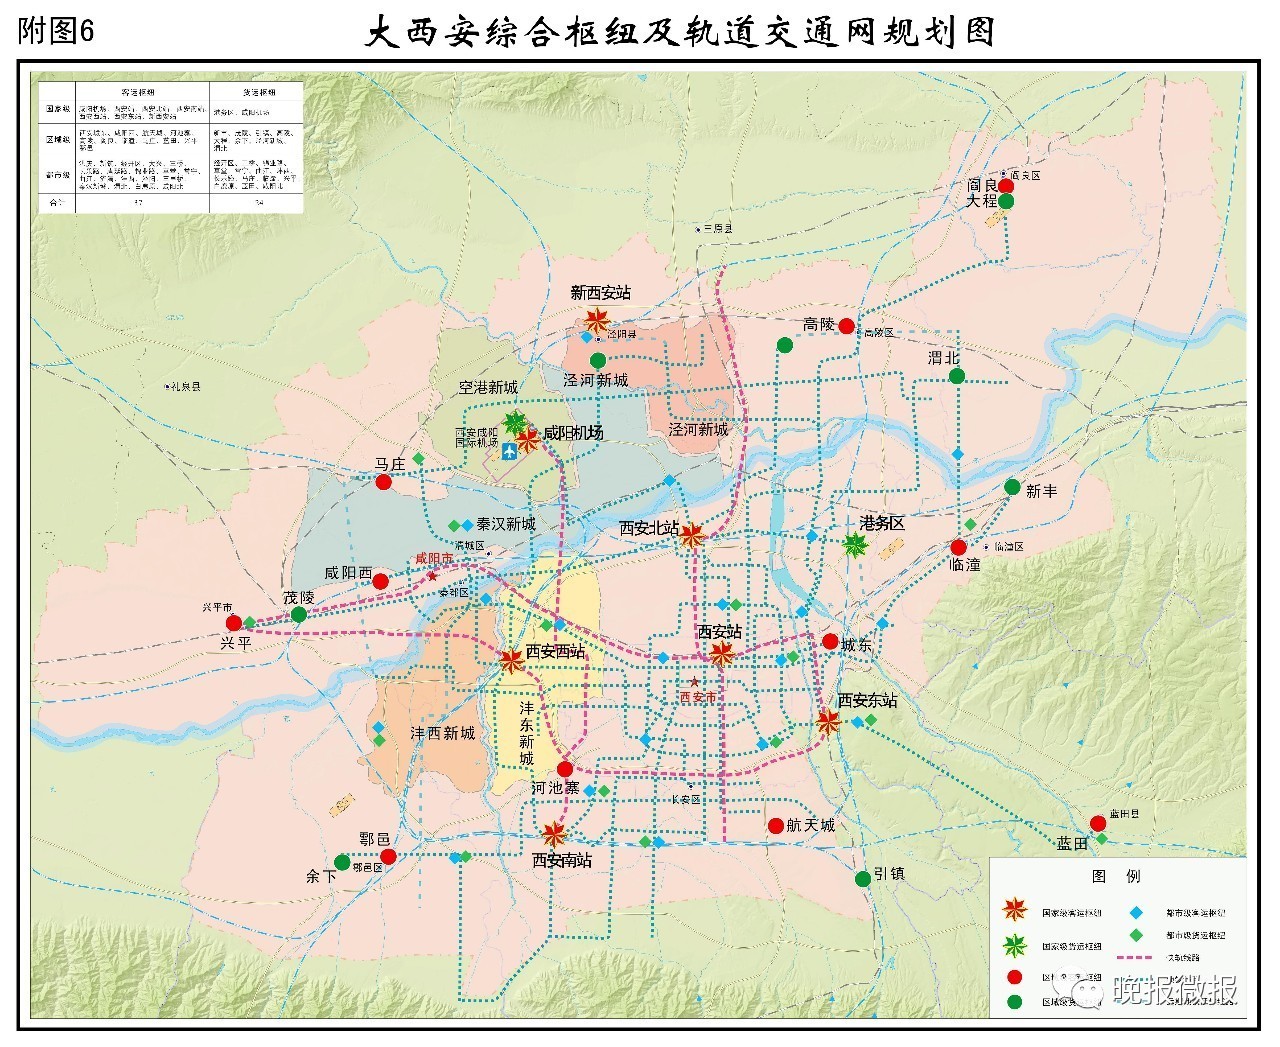 《大西安立体综合交通发展战略规划》印发 重点区域为西安市城区咸阳